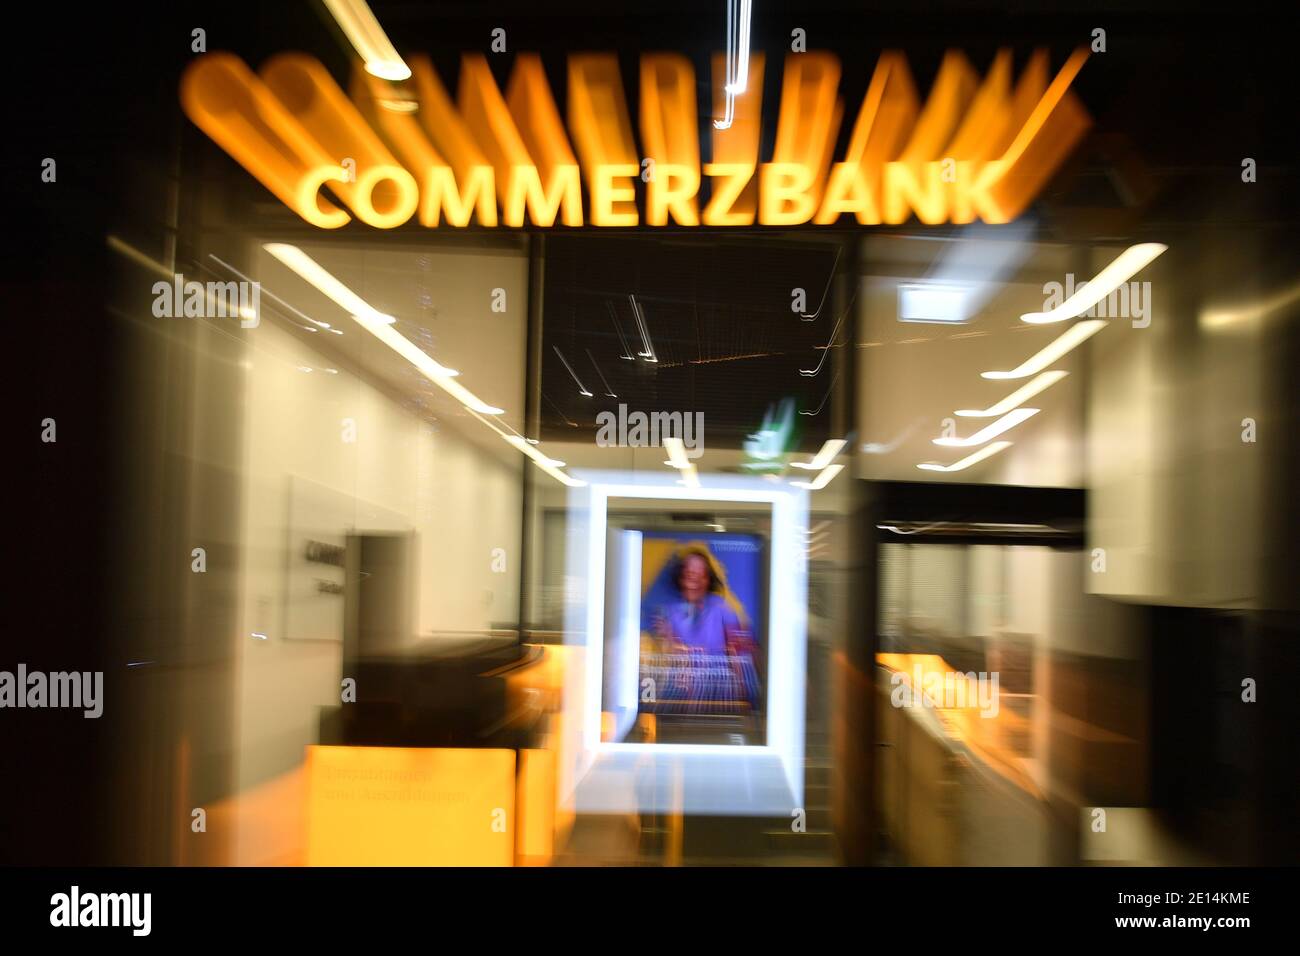 Monaco, Germania. 26 Nov 2020. Chiuso COMMERZBANK filiale in serata, ingresso, afterts.Banken | utilizzo nel mondo Credit: dpa/Alamy Live News Foto Stock